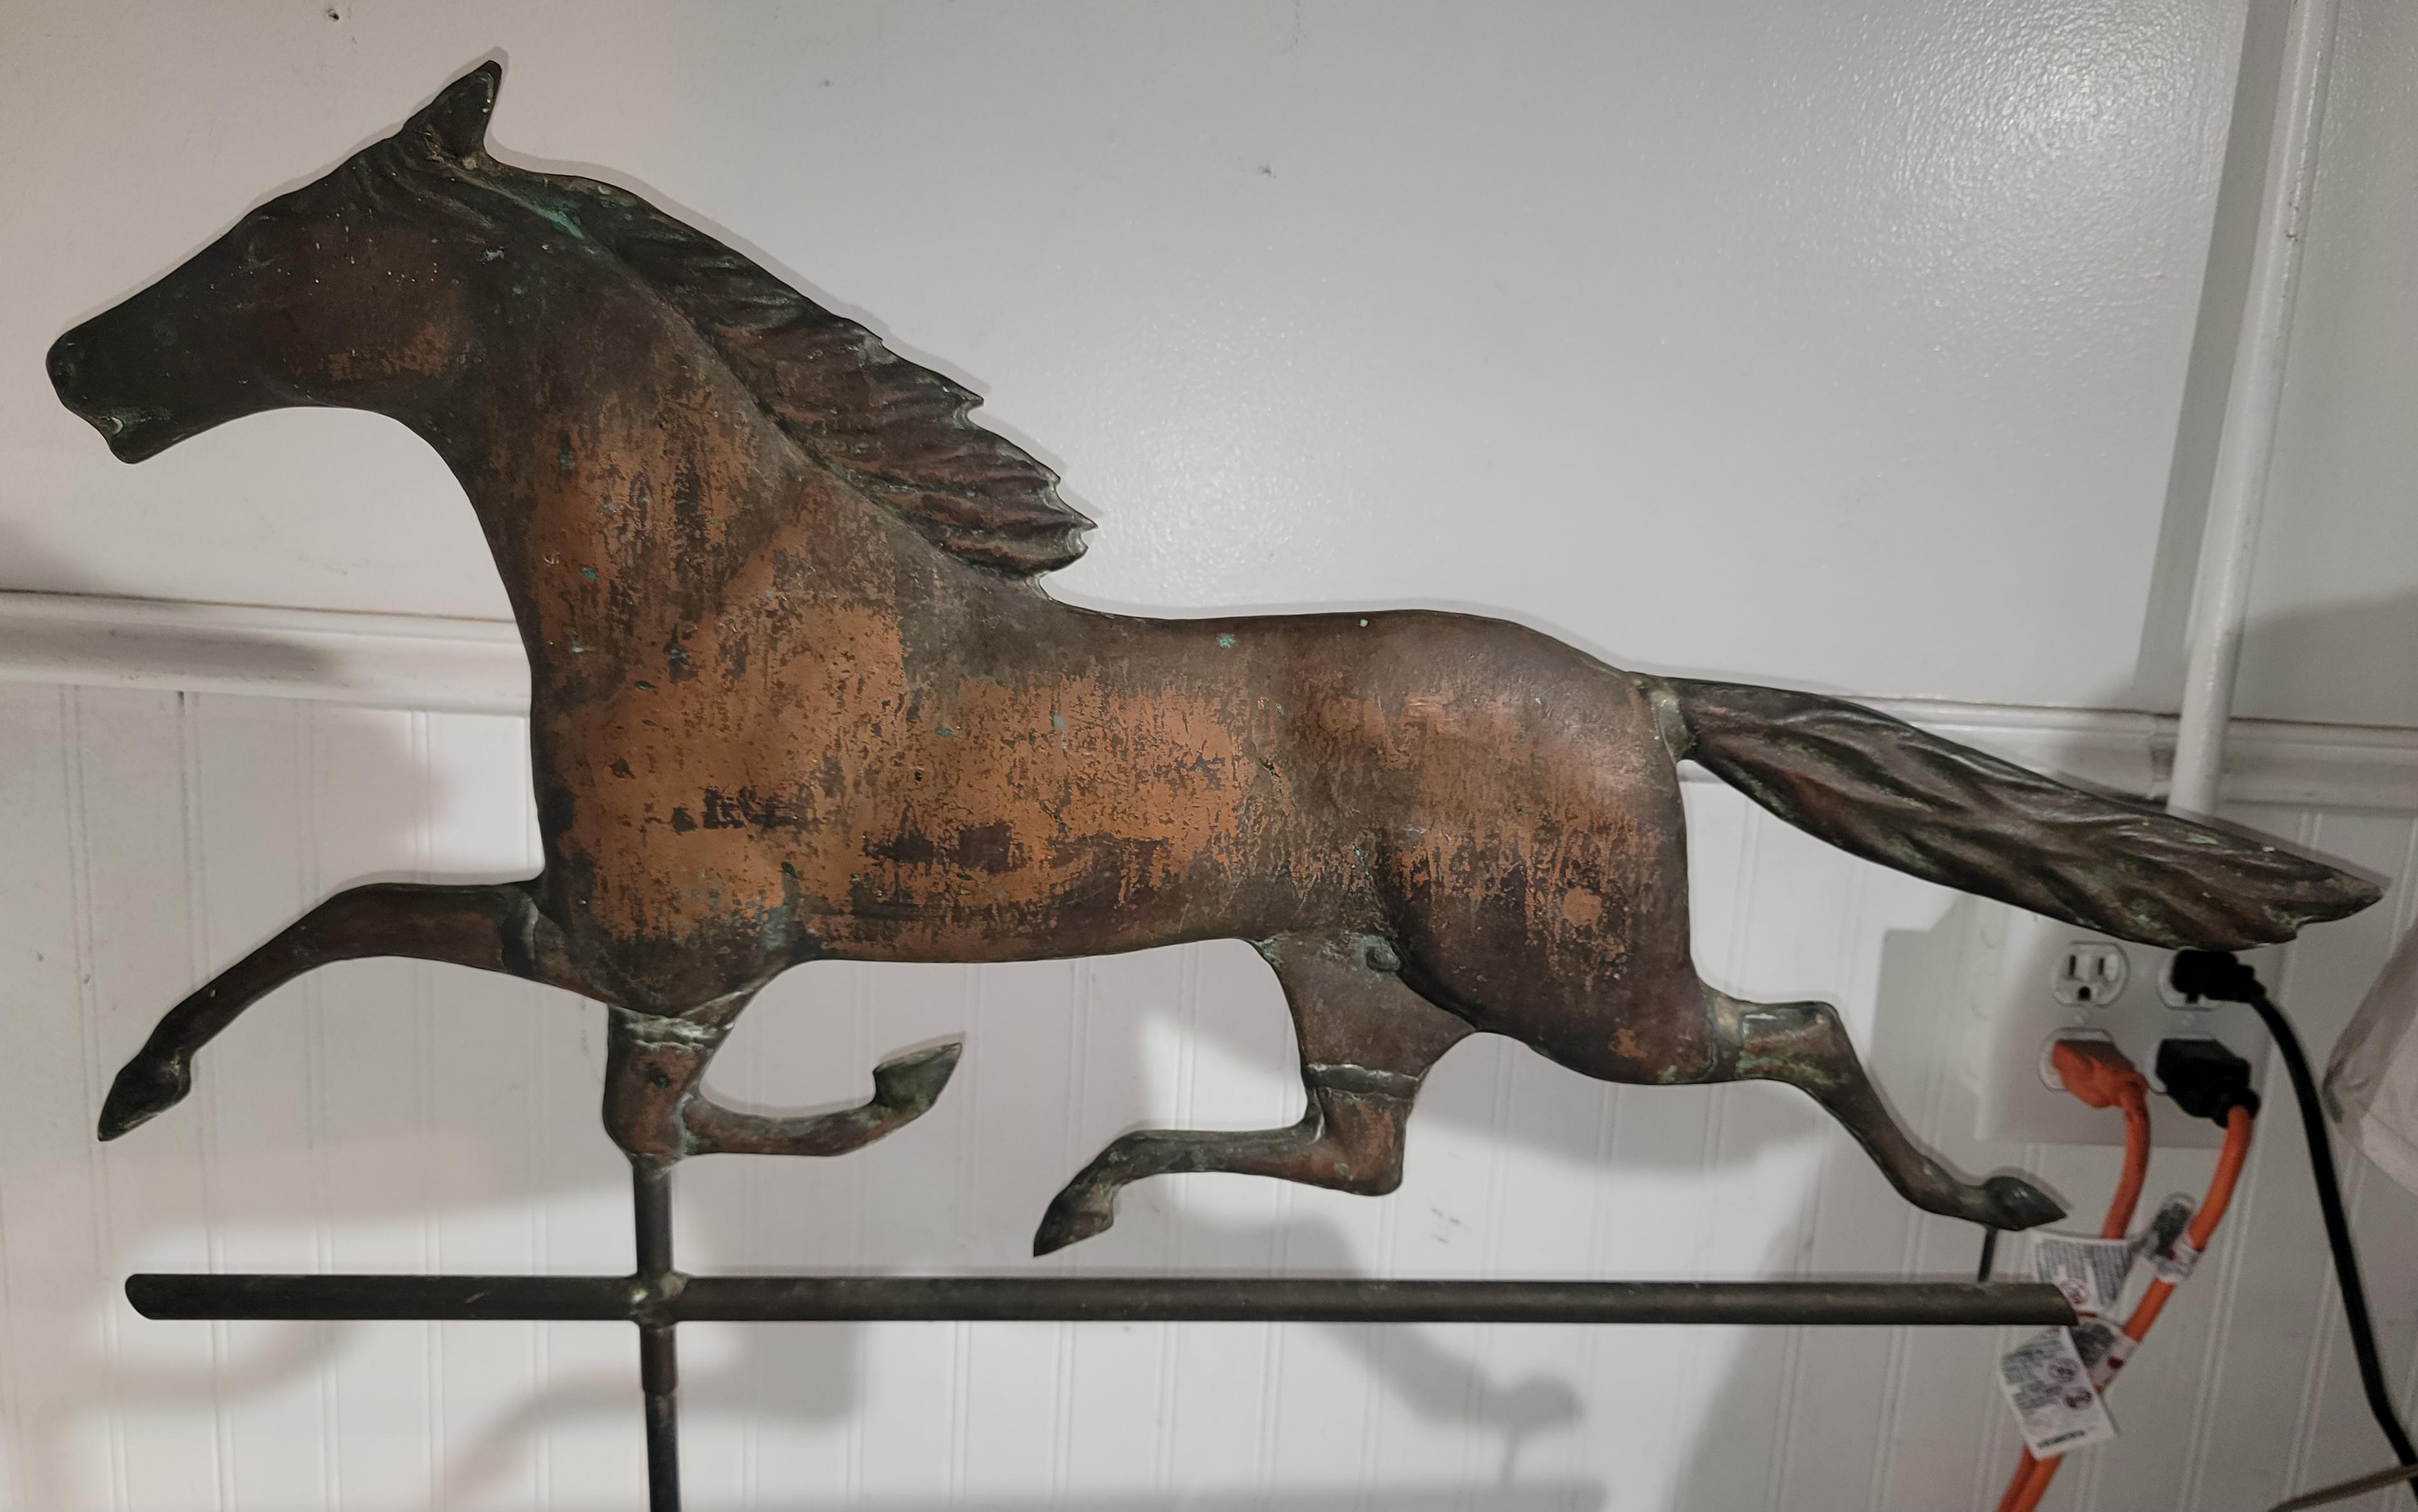 Dieses feine Ganzkörper-Kupfer Pferd Wetterfahne hat eine erstaunliche Patina  Gefunden in einer privaten Volkskunstsammlung. Die Form A ist erstaunlich, mit einer so anmutigen Form.

Höhe und Gewicht können geringfügig variieren, da wir eine andere